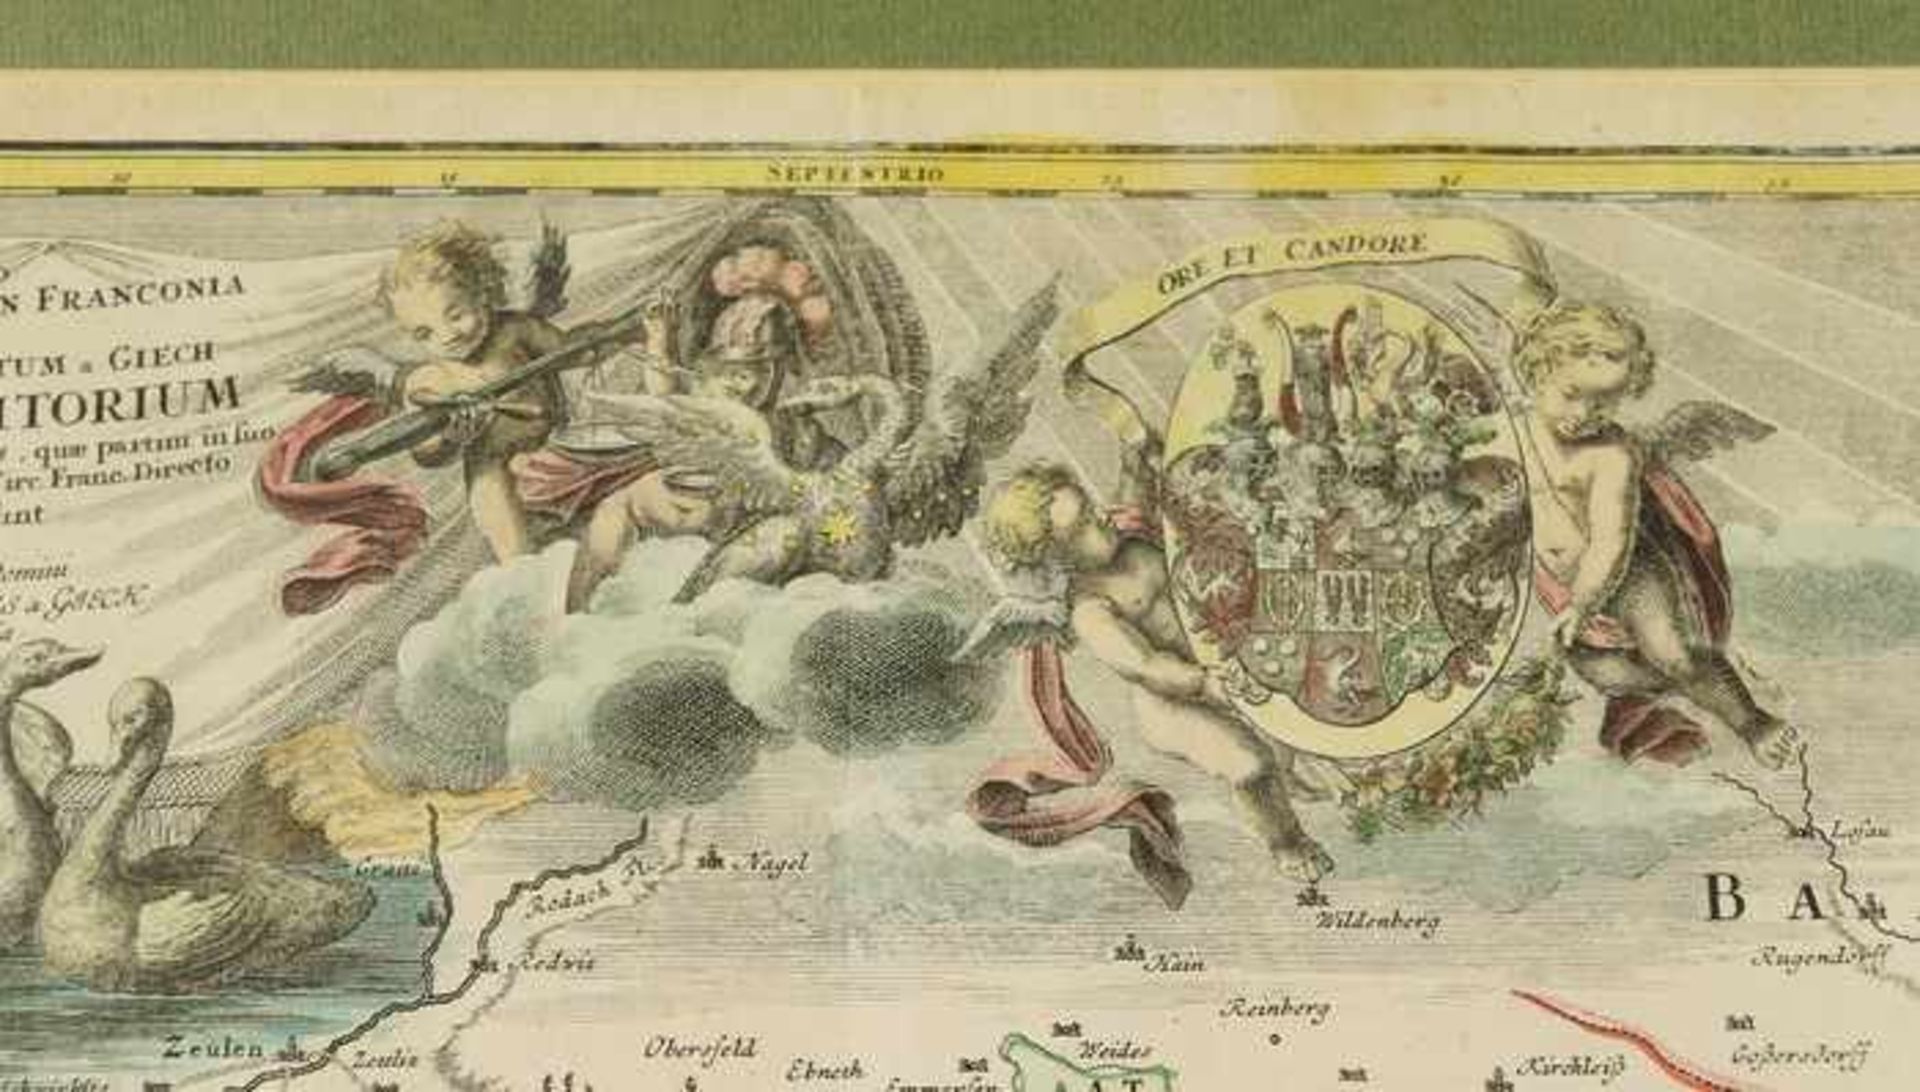 Homann - Frankenum 1720, "Geographica Discriptio...Particulare Territorium...", Kupferstichkarte, - Bild 2 aus 3